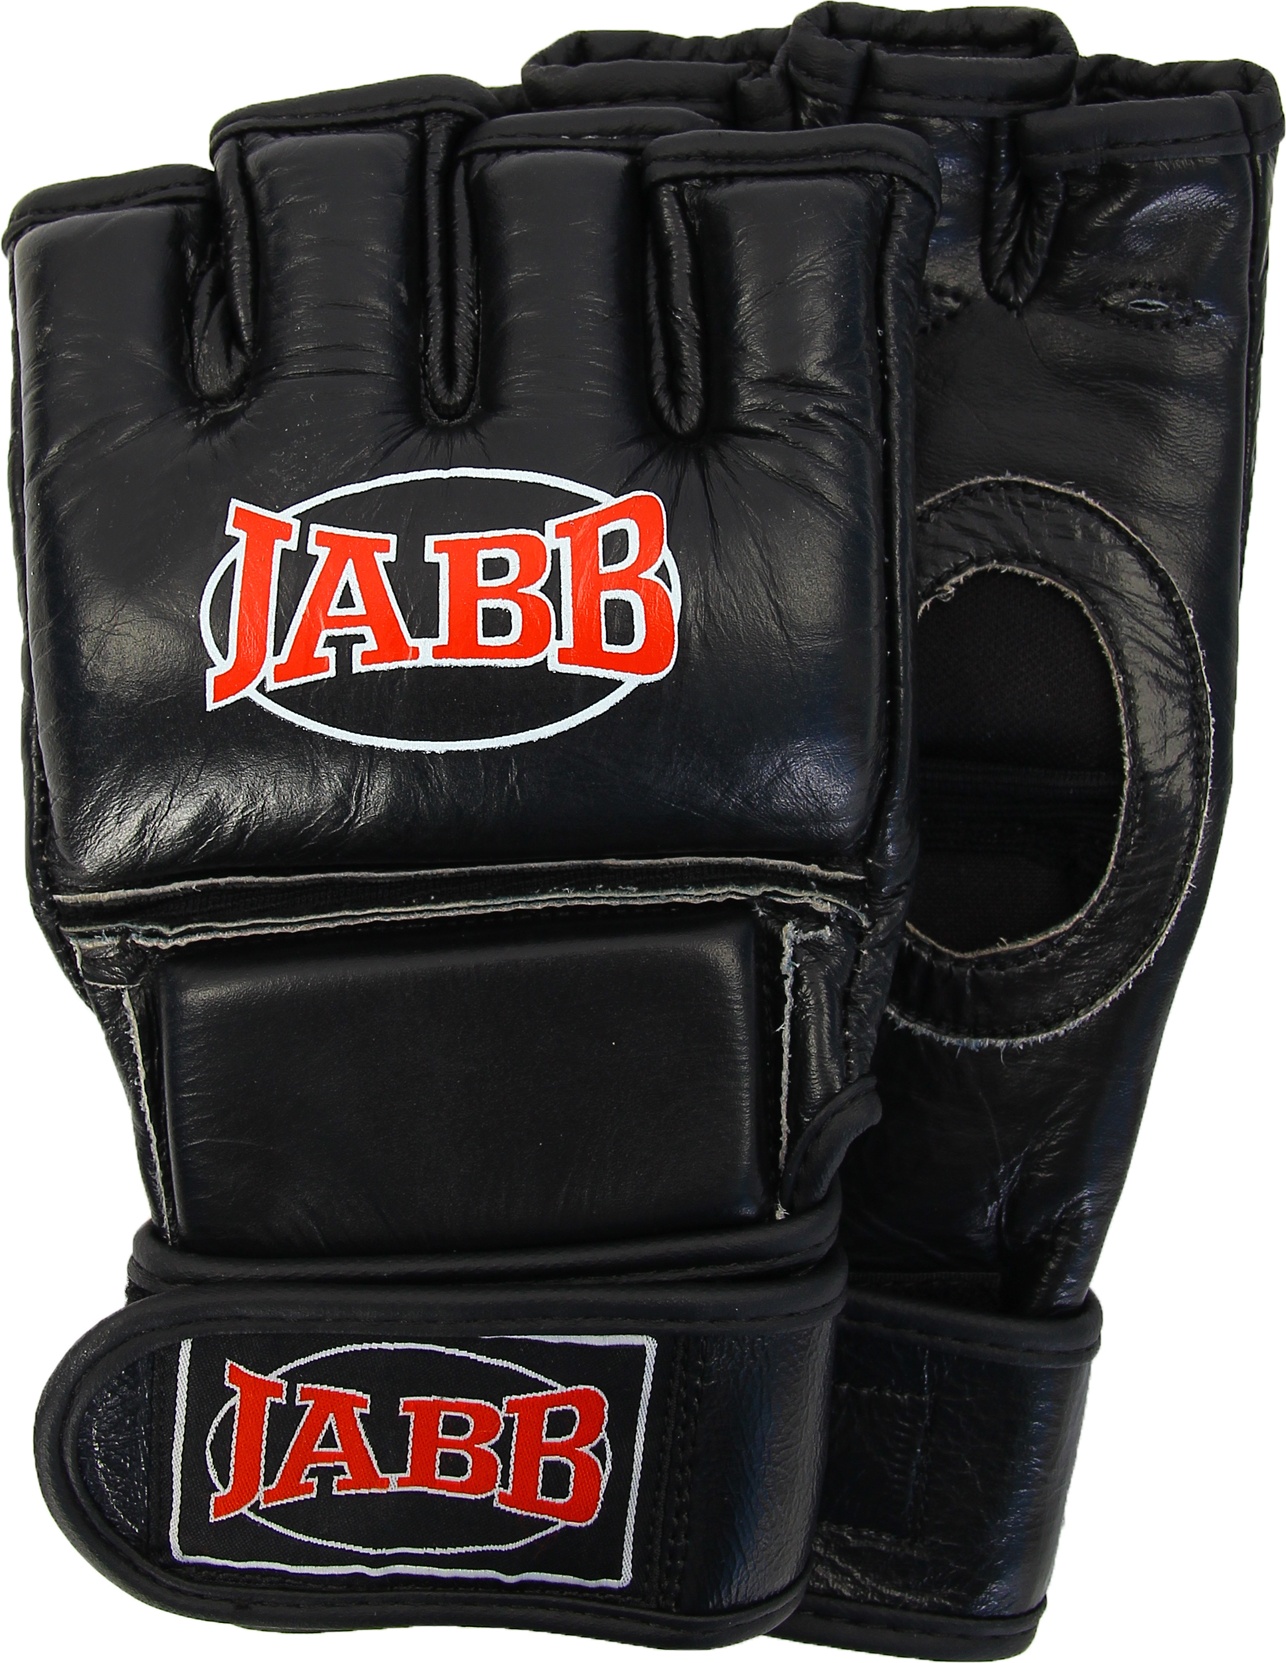 Боксерские перчатки Jabb JE-23231T черные, 12 унций